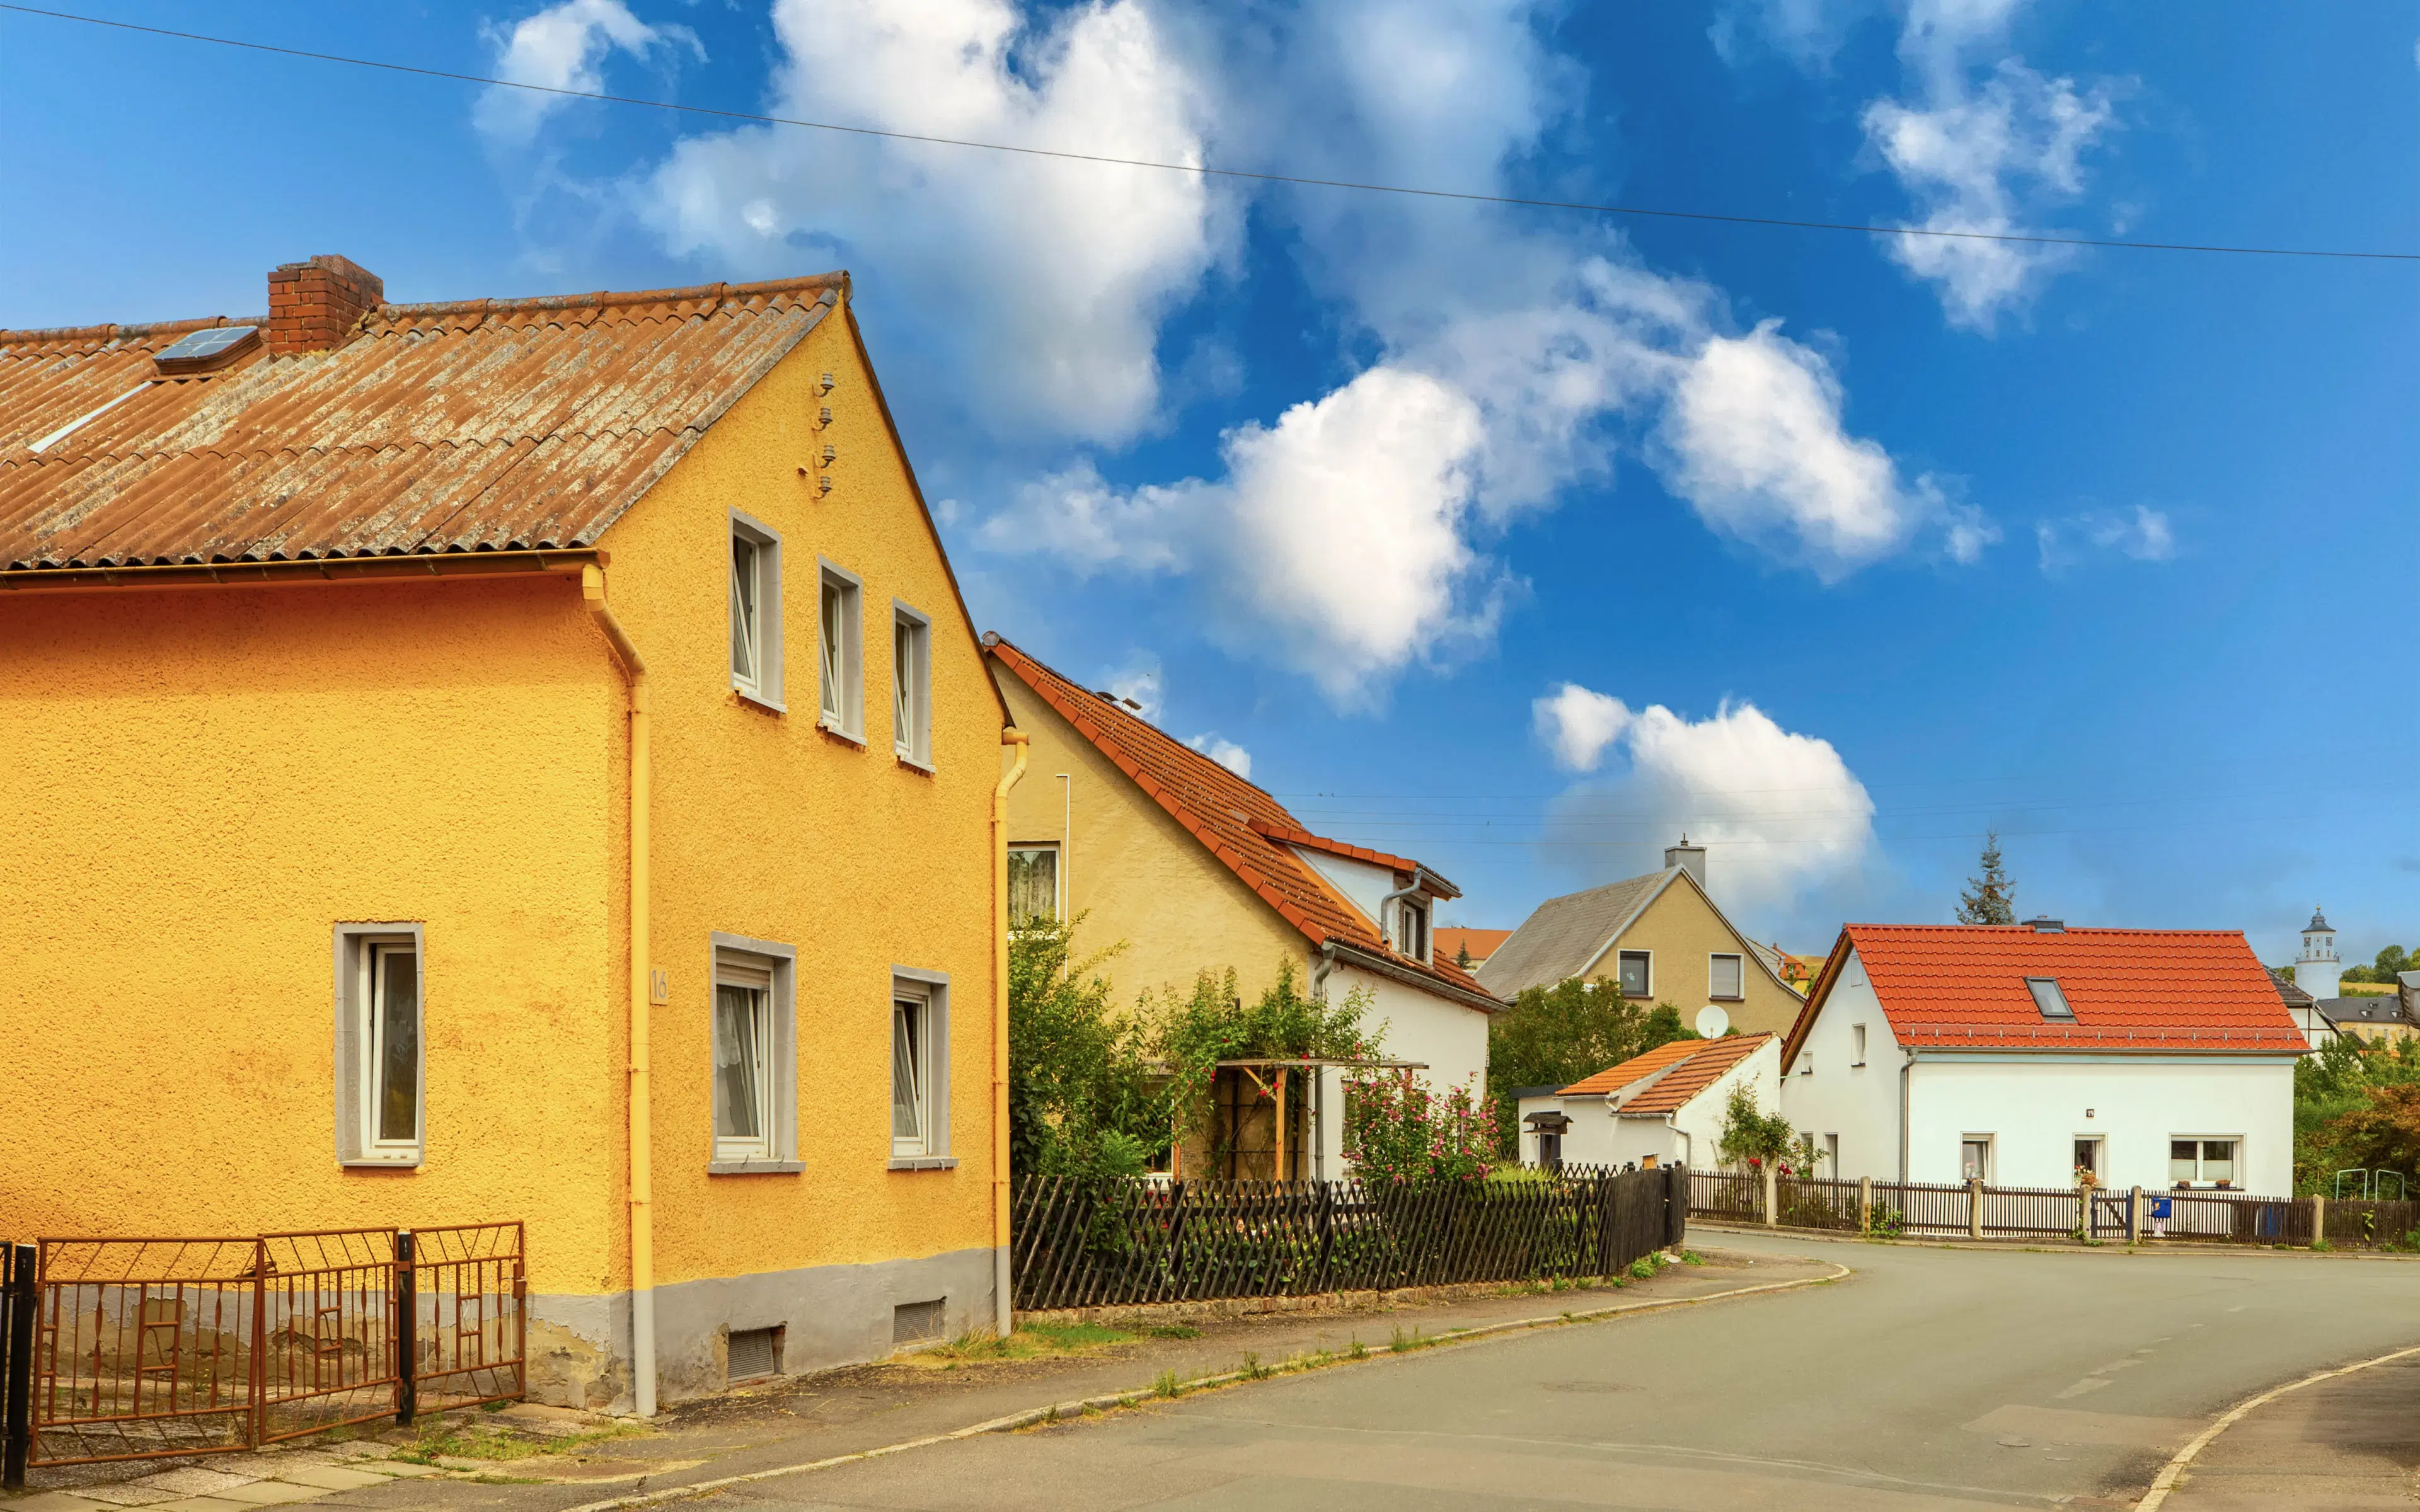 Vrijstaande woning met garage en bijgebouwen in Crossen an der Elster - Duitsland